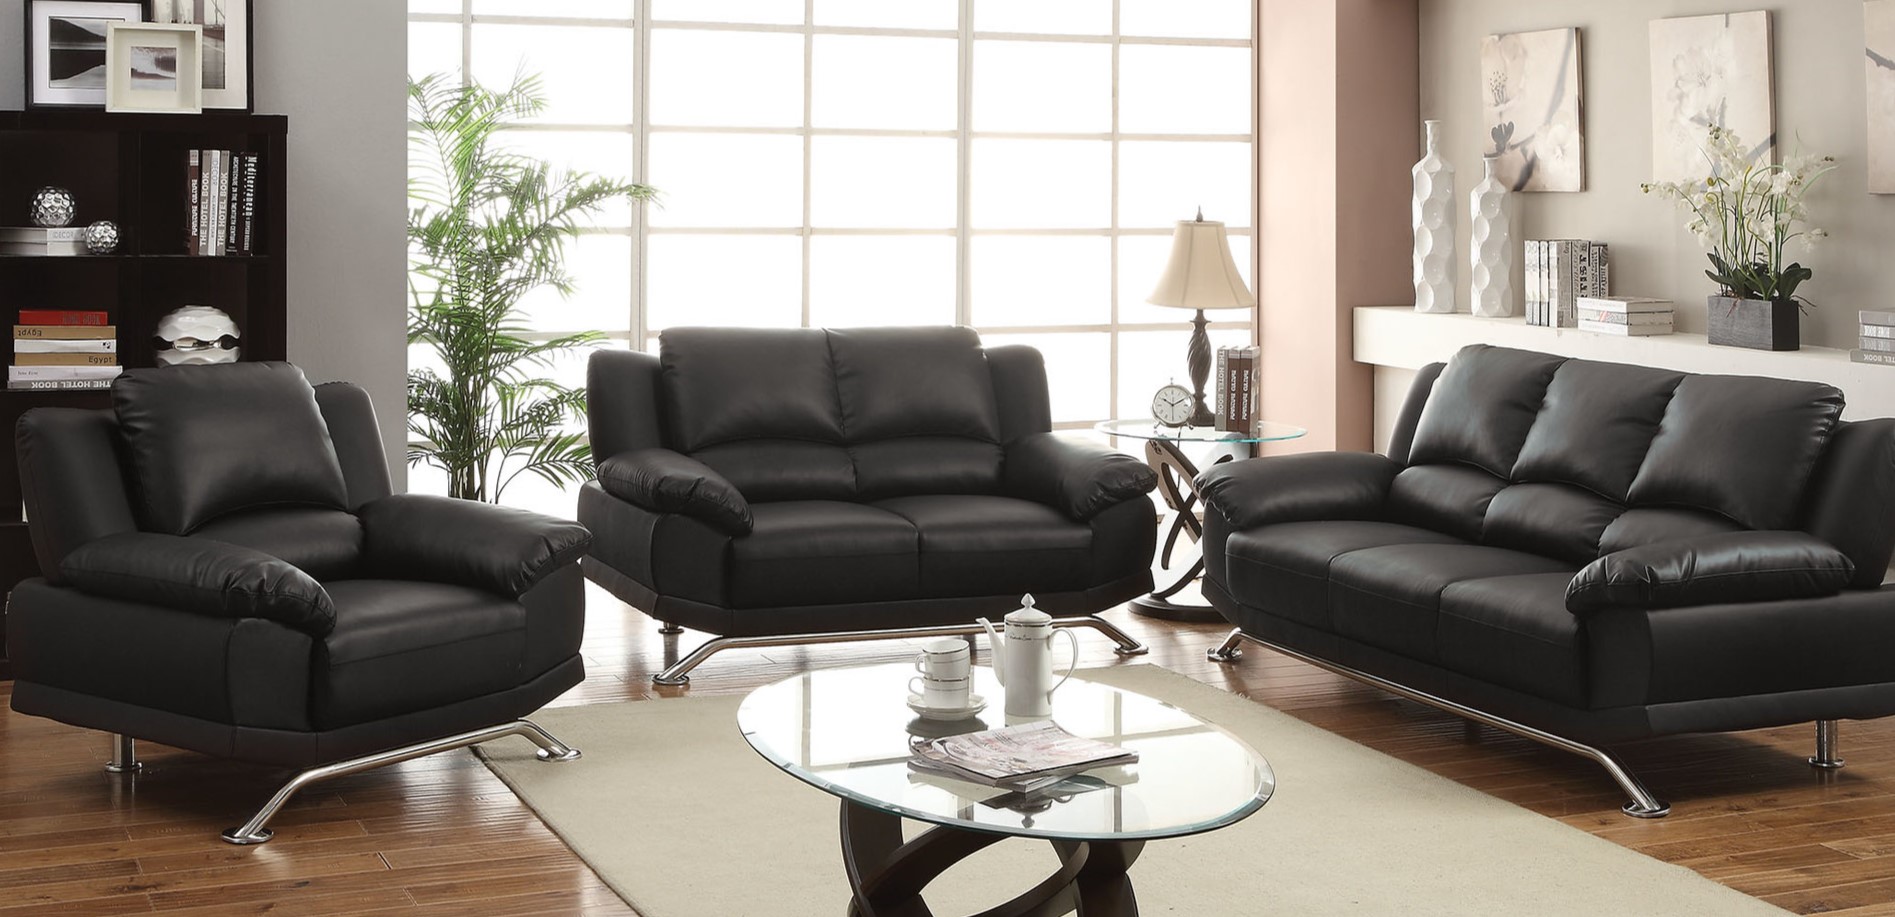 Черные кожаные диваны идеально дополнят интерьер современного офиса